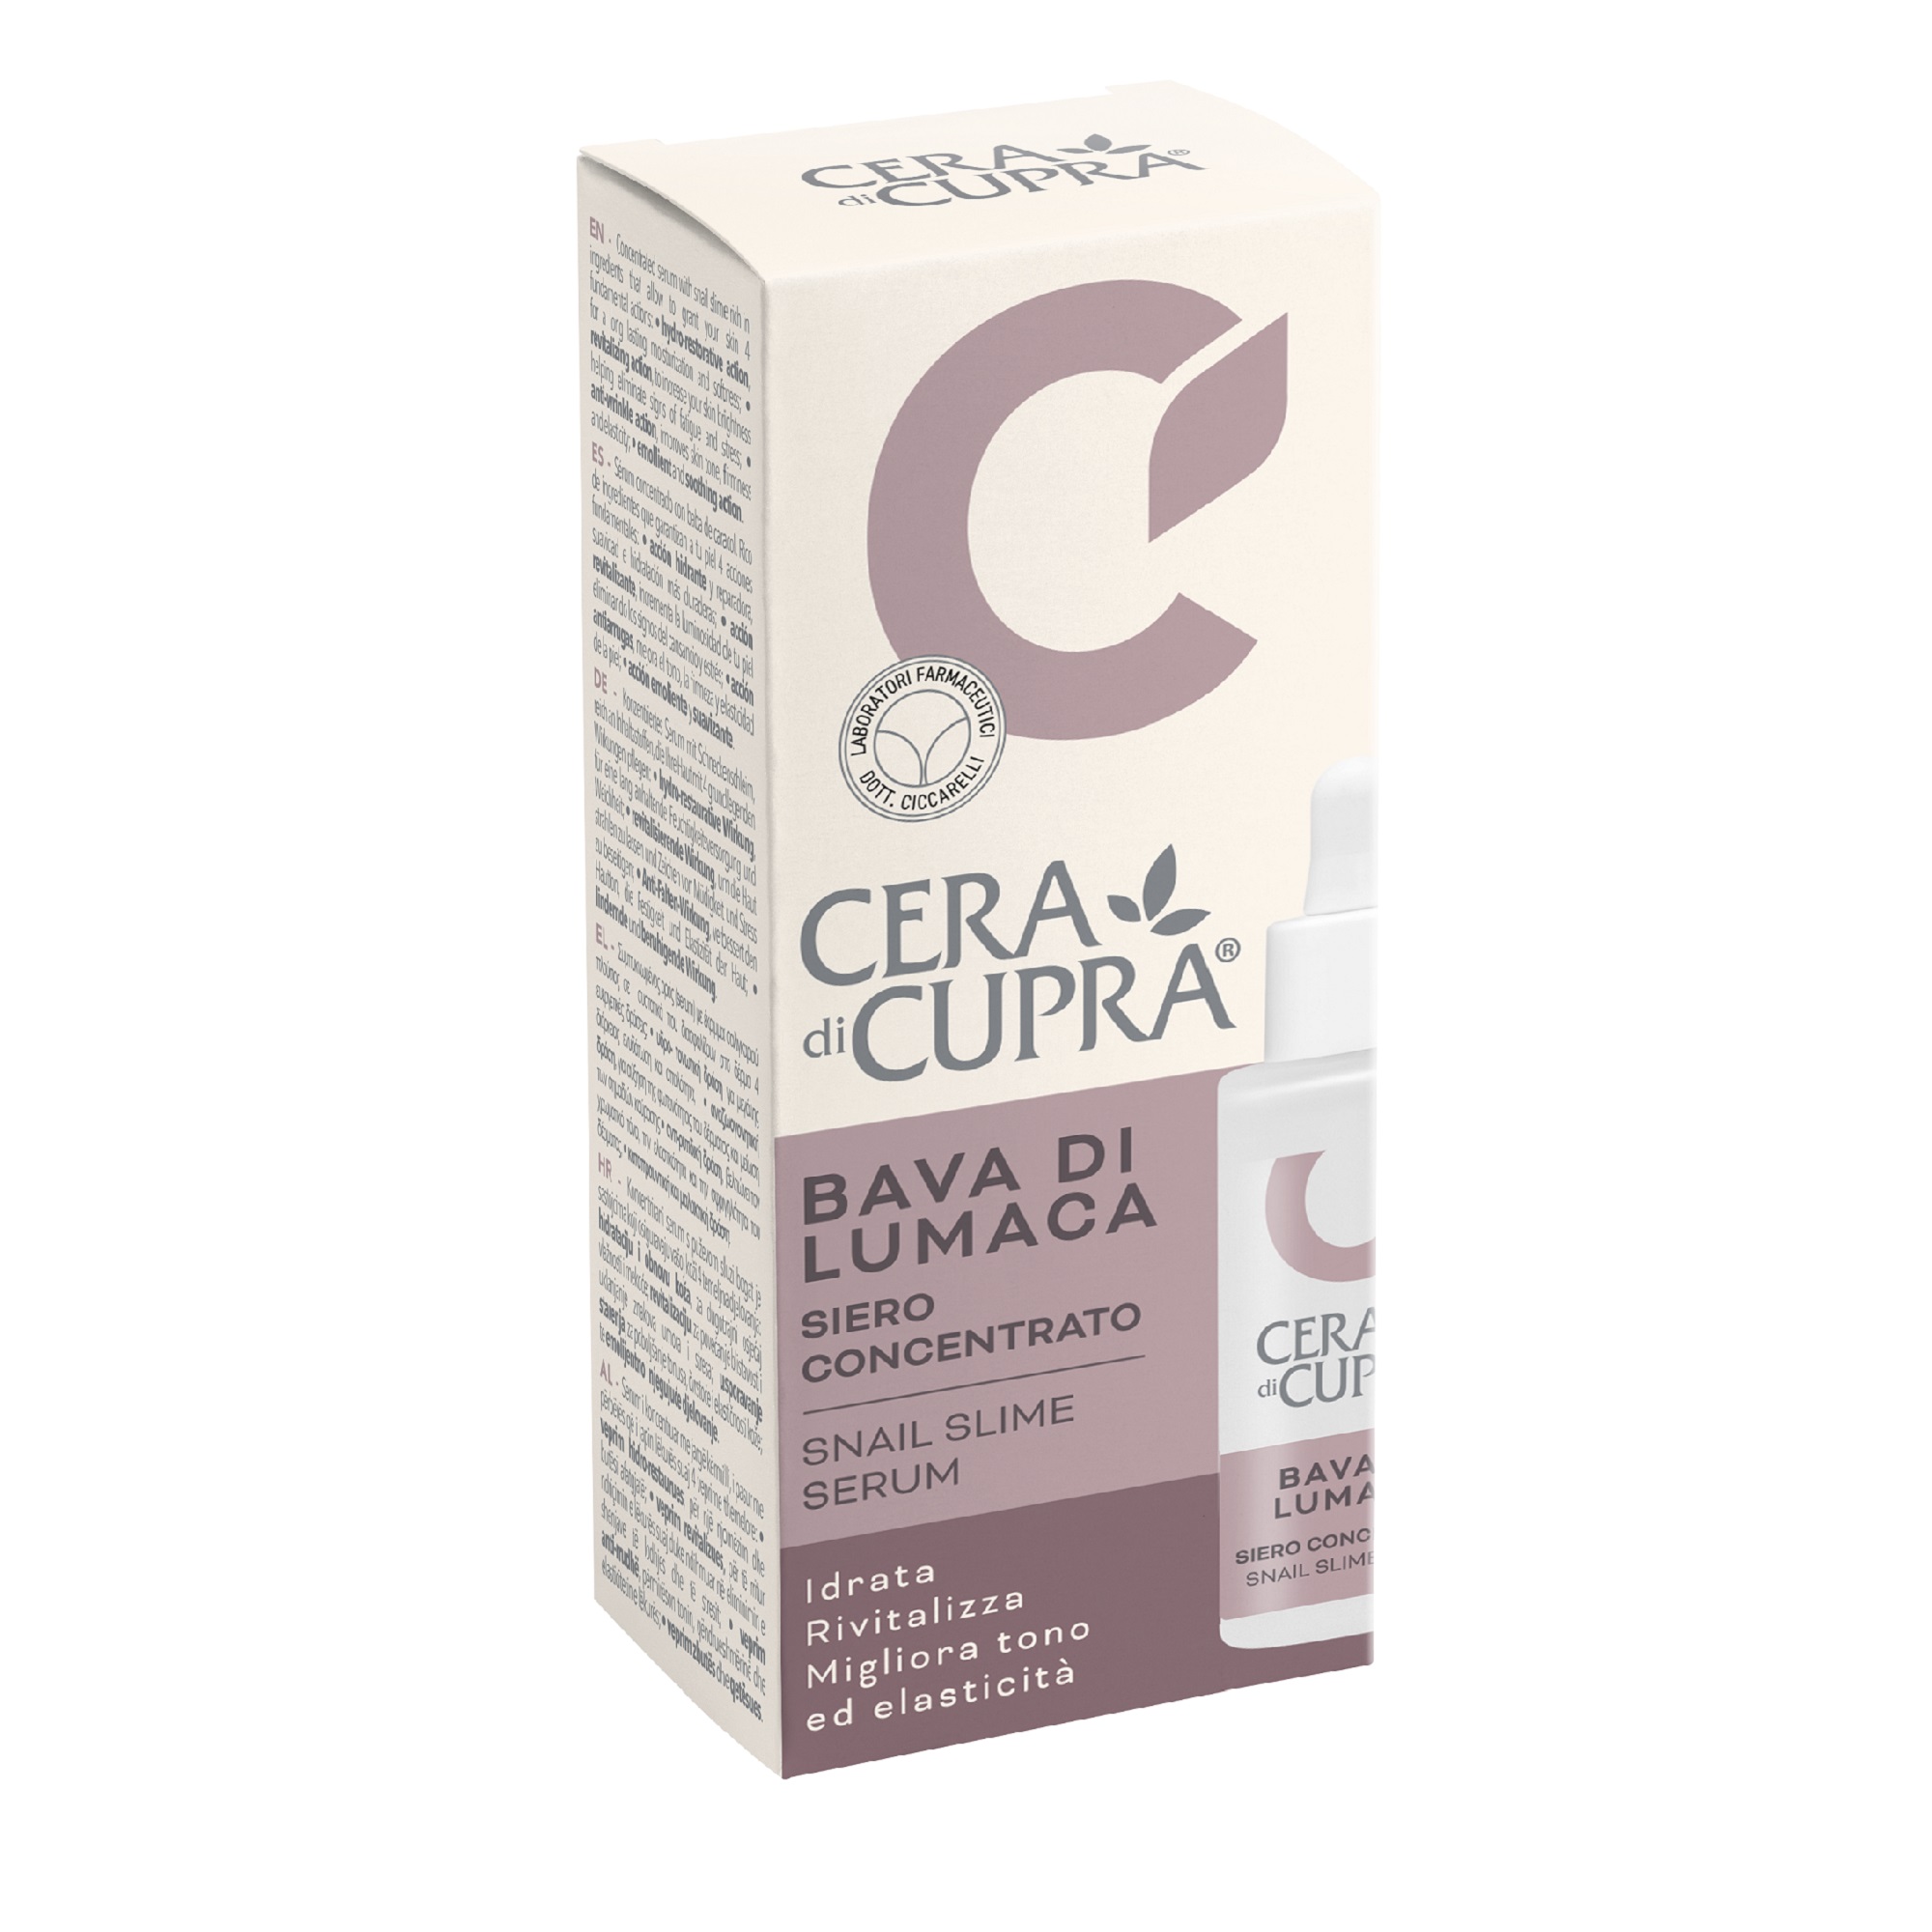 Сыворотка для лица Cera di Cupra C МУЦИНОМ УЛИТКИ 30 мл сыворотка концентрат для лица с пептидамимл 30мл